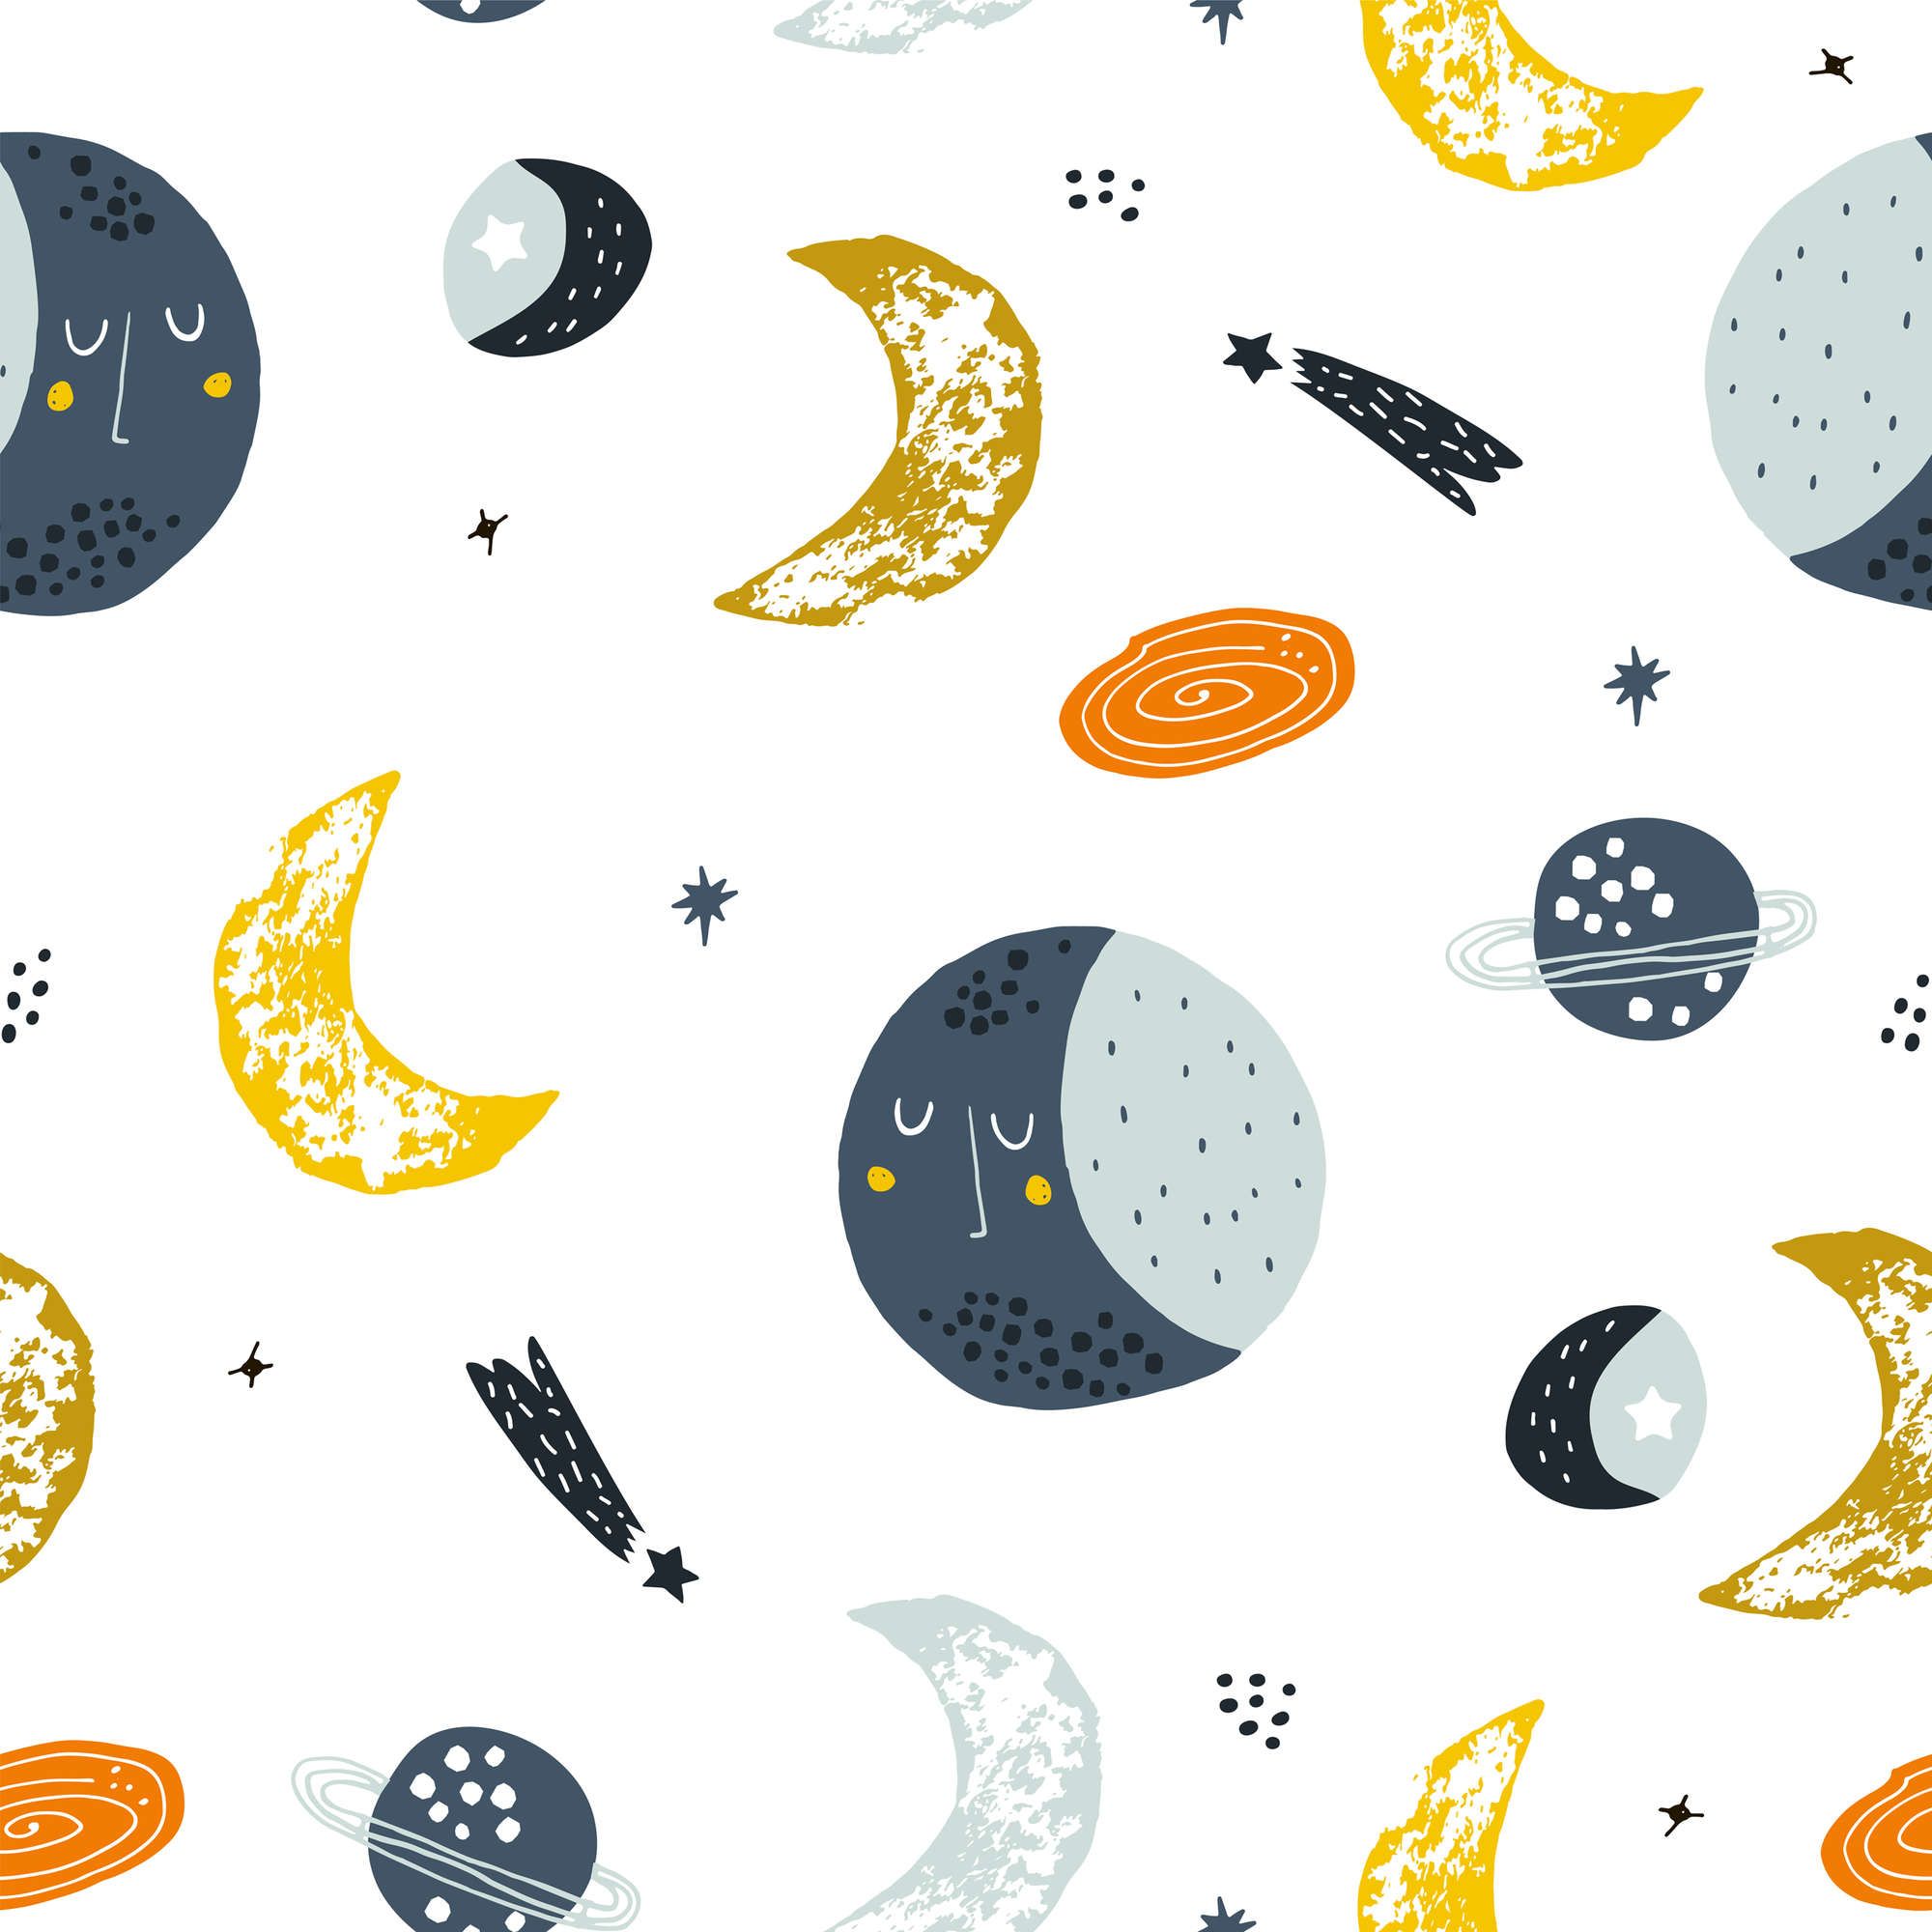             papiers peints à impression numérique avec lunes et étoiles filantes - intissé lisse & nacré
        